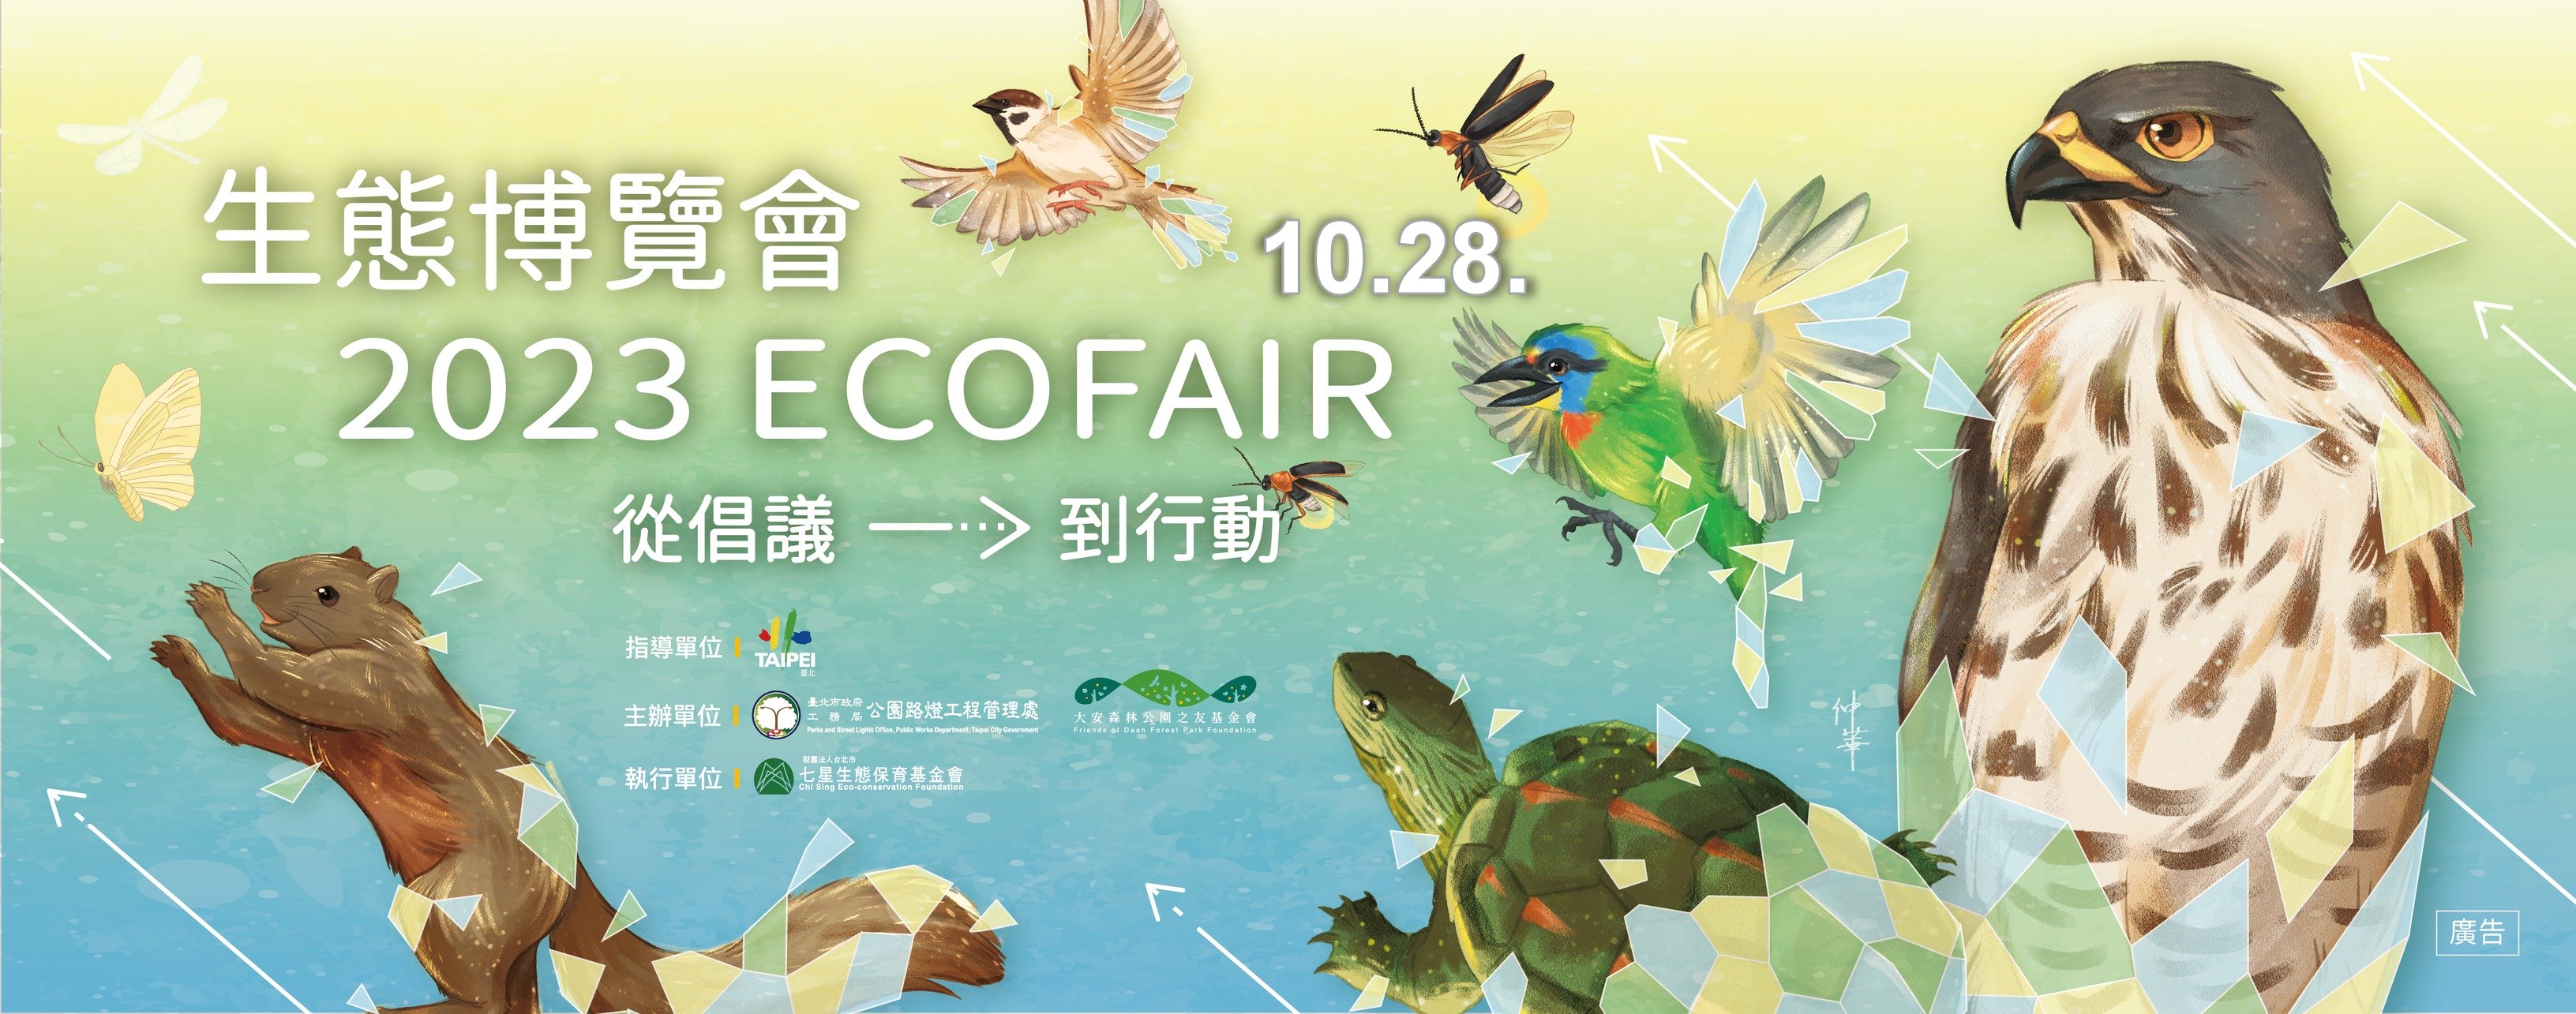 2023 ECOFAIR 生態博覽會 從倡議到行動 10月28日在大安森林公園舉行 歡迎蒞臨!